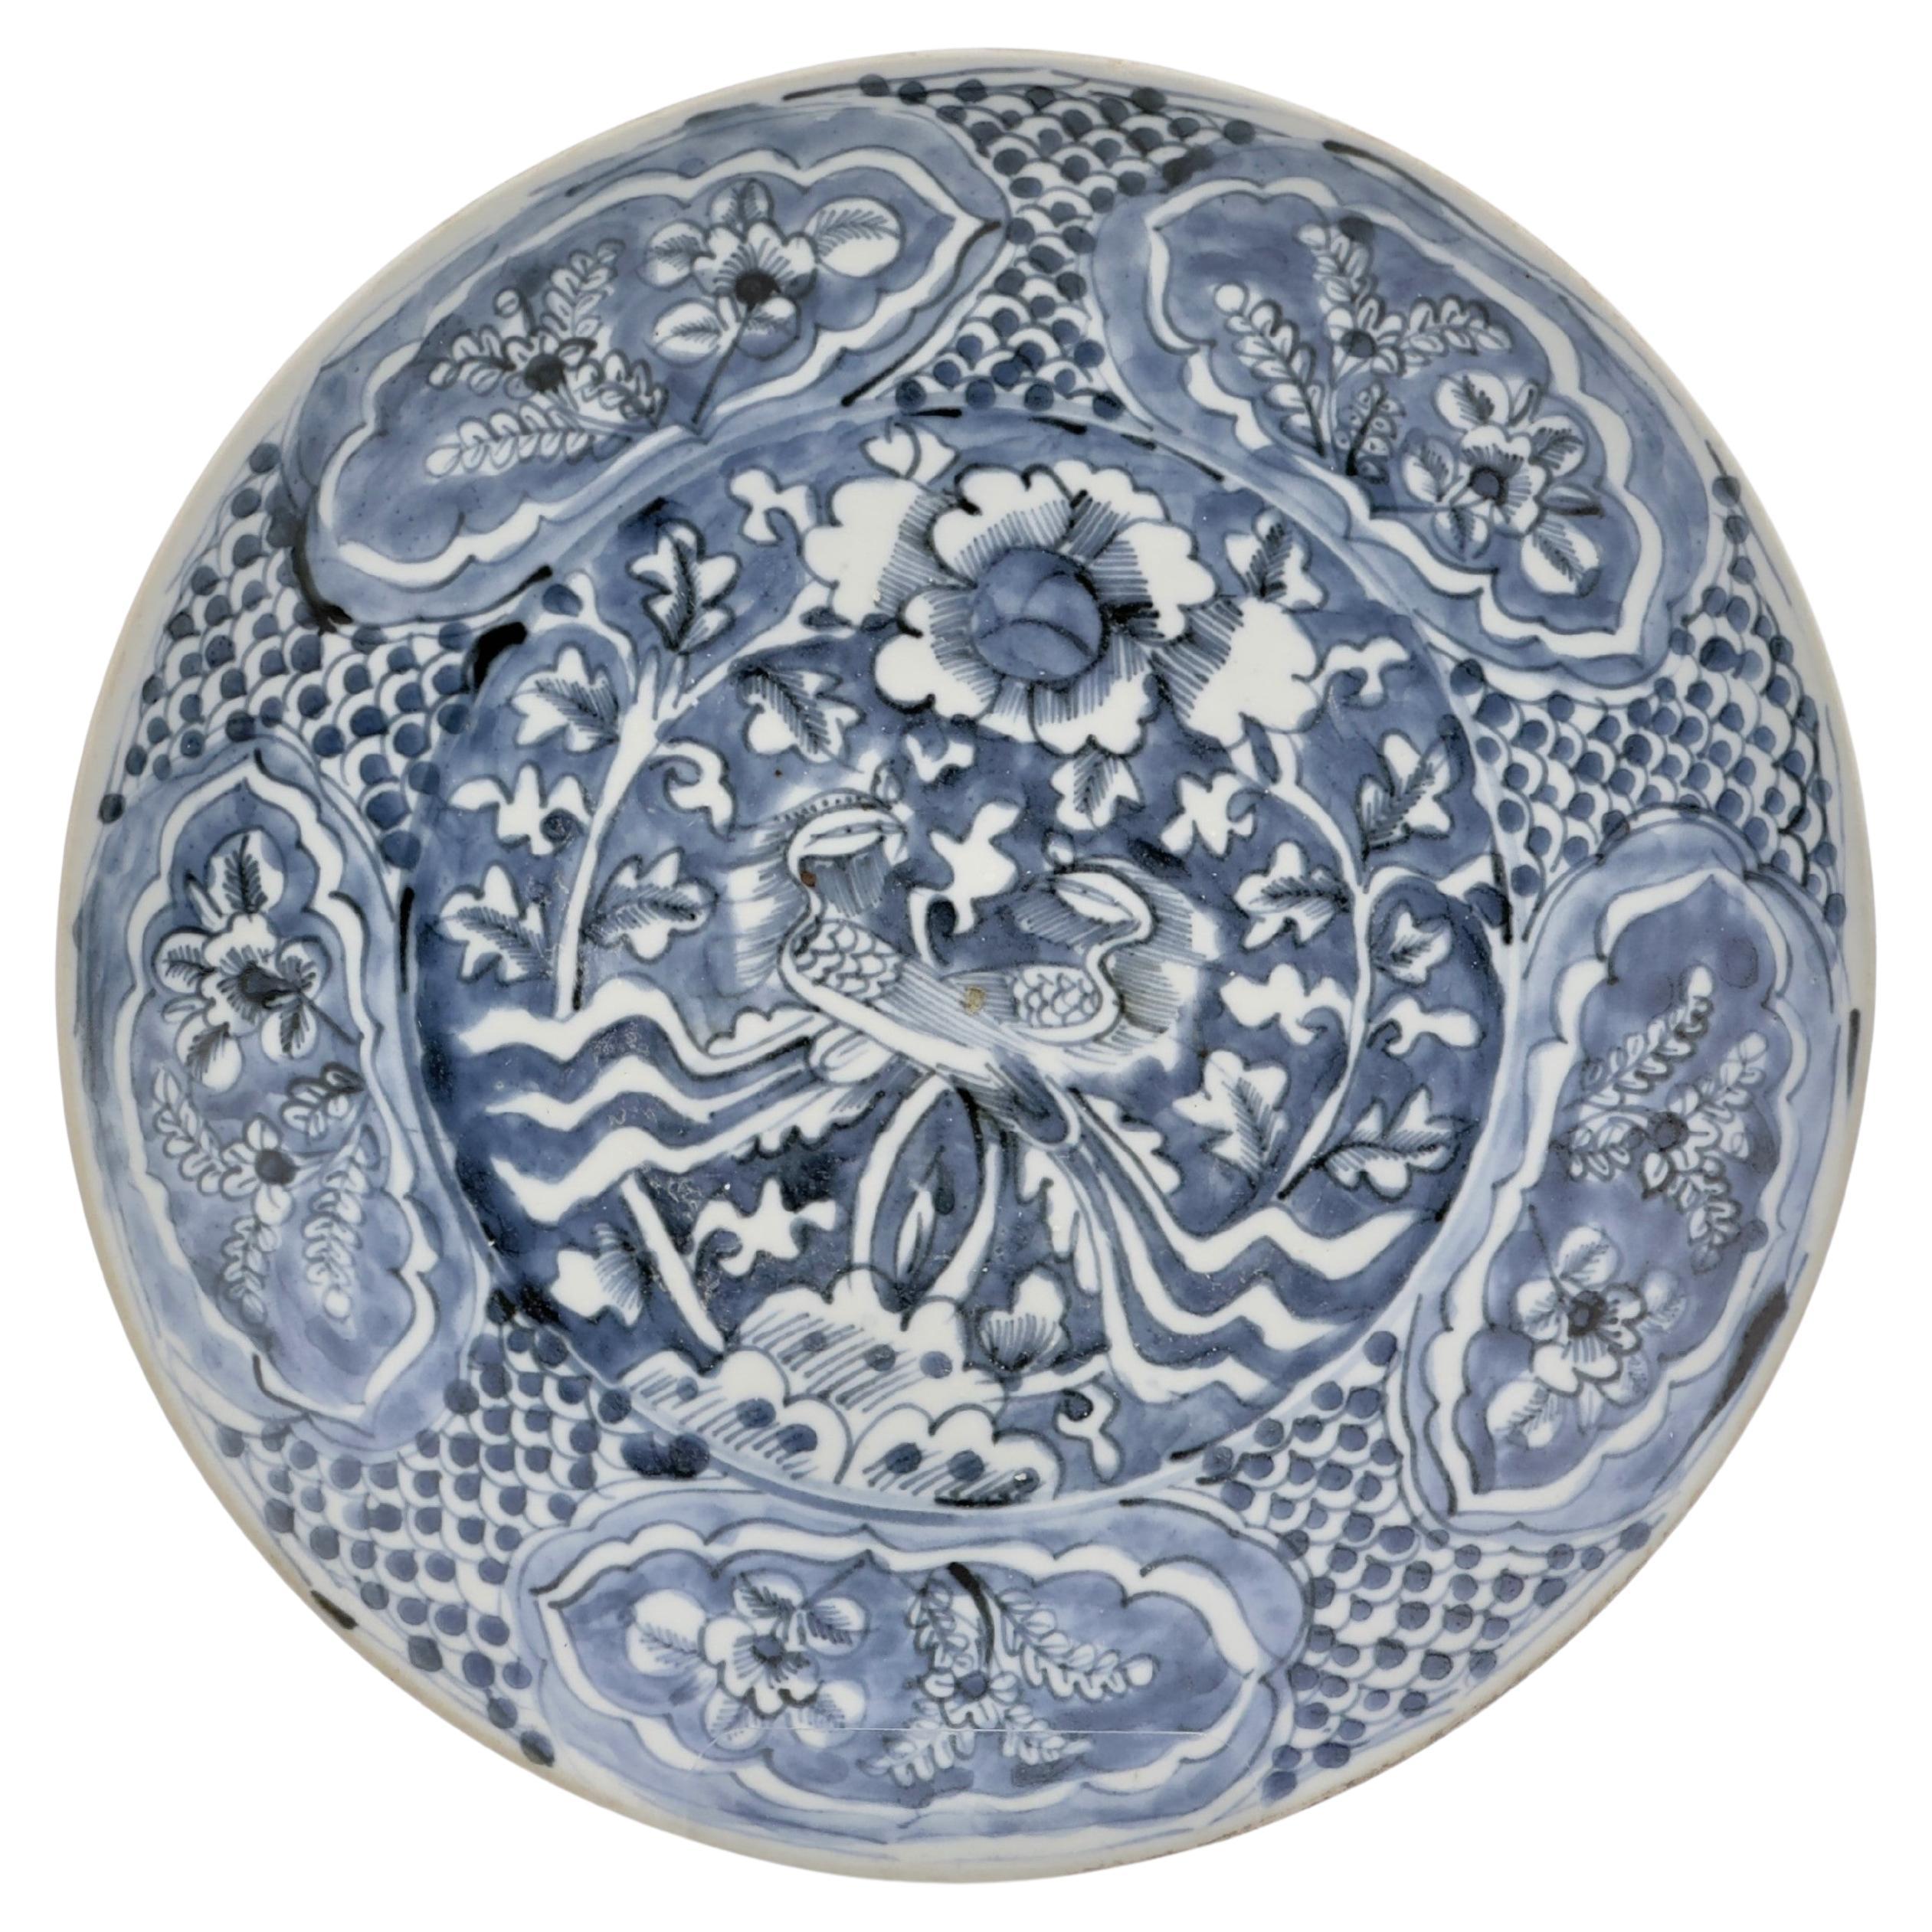 Chinesisches blau-weißes Swatow-Keramikgeschirr, späte Ming Dynasty